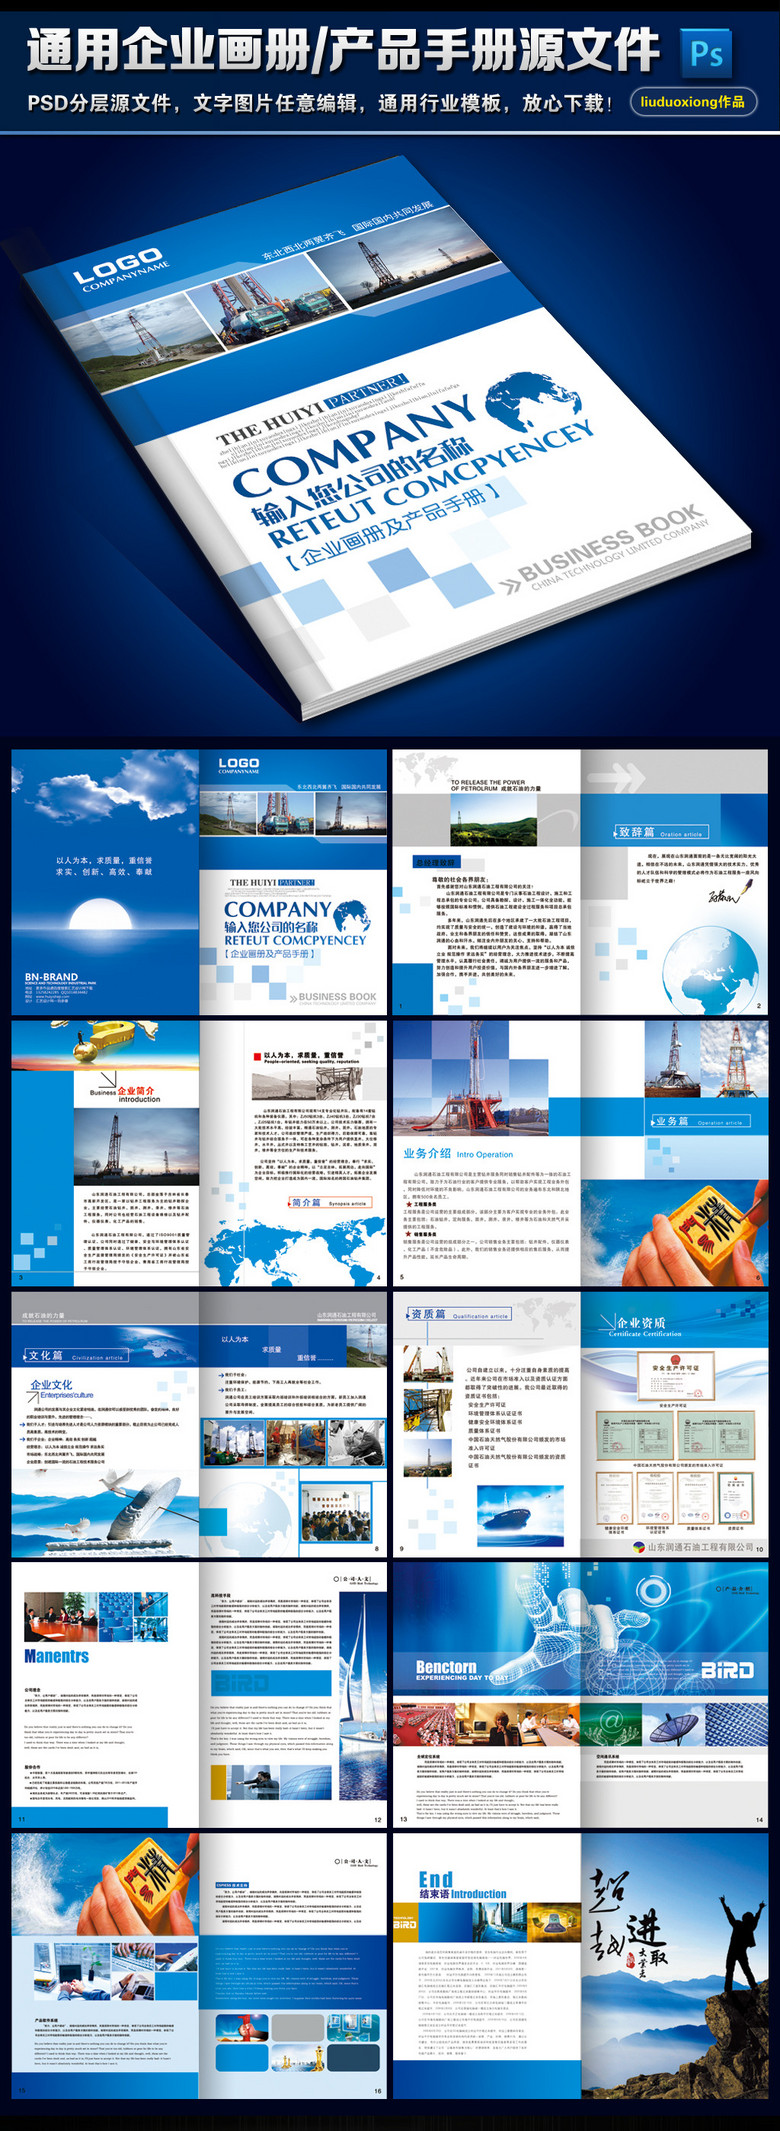 整套蓝色企业宣传册公司画册产品手册模板